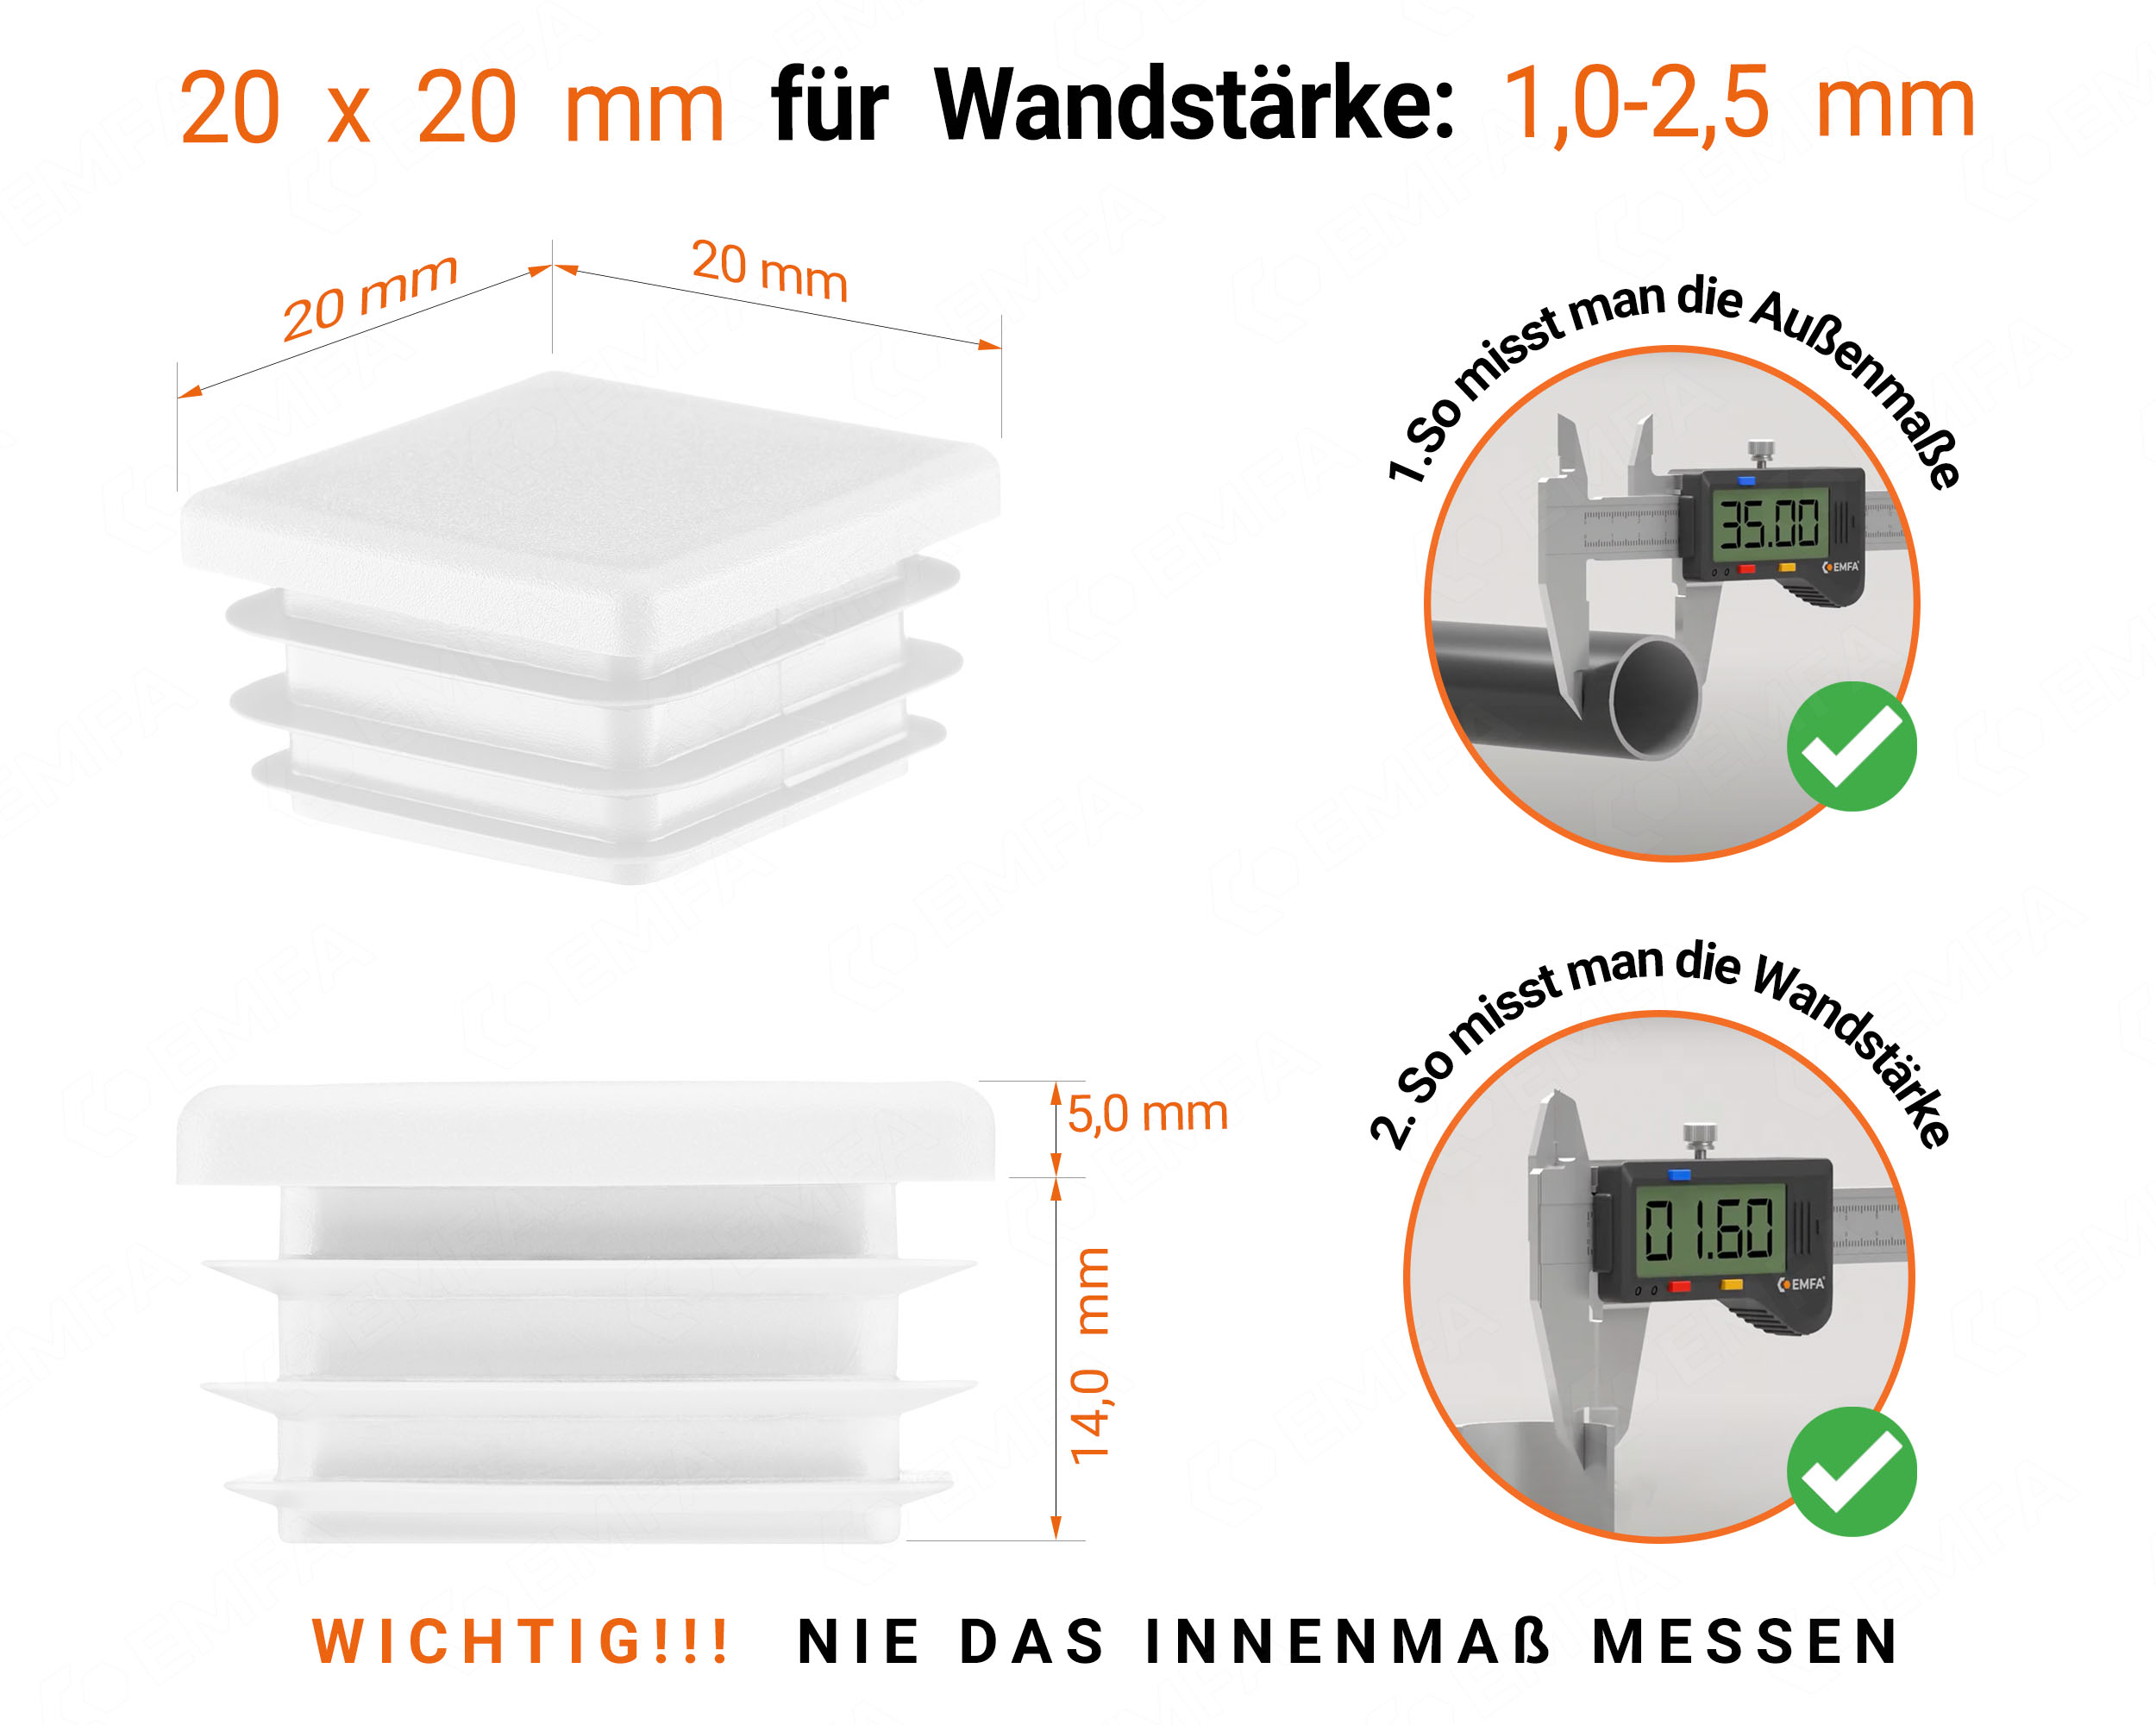 Weiße Endkappe für Vierkantrohre in der Größe 20x20 mm mit technischen Abmessungen und Anleitung für korrekte Messung